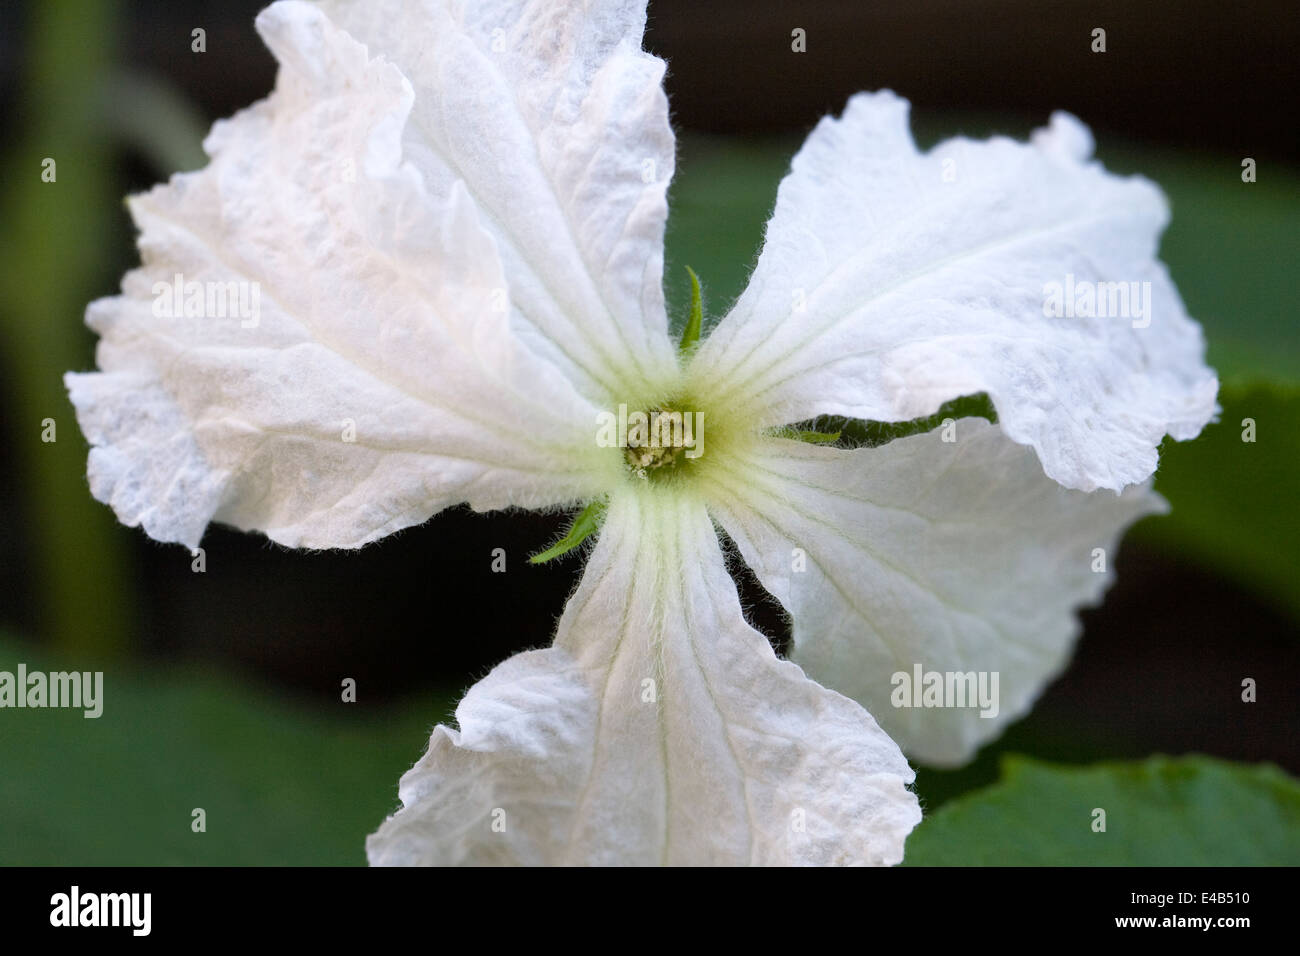 Lagenaria siceraria flower. Calabash or bottle gourd flower. Stock Photo